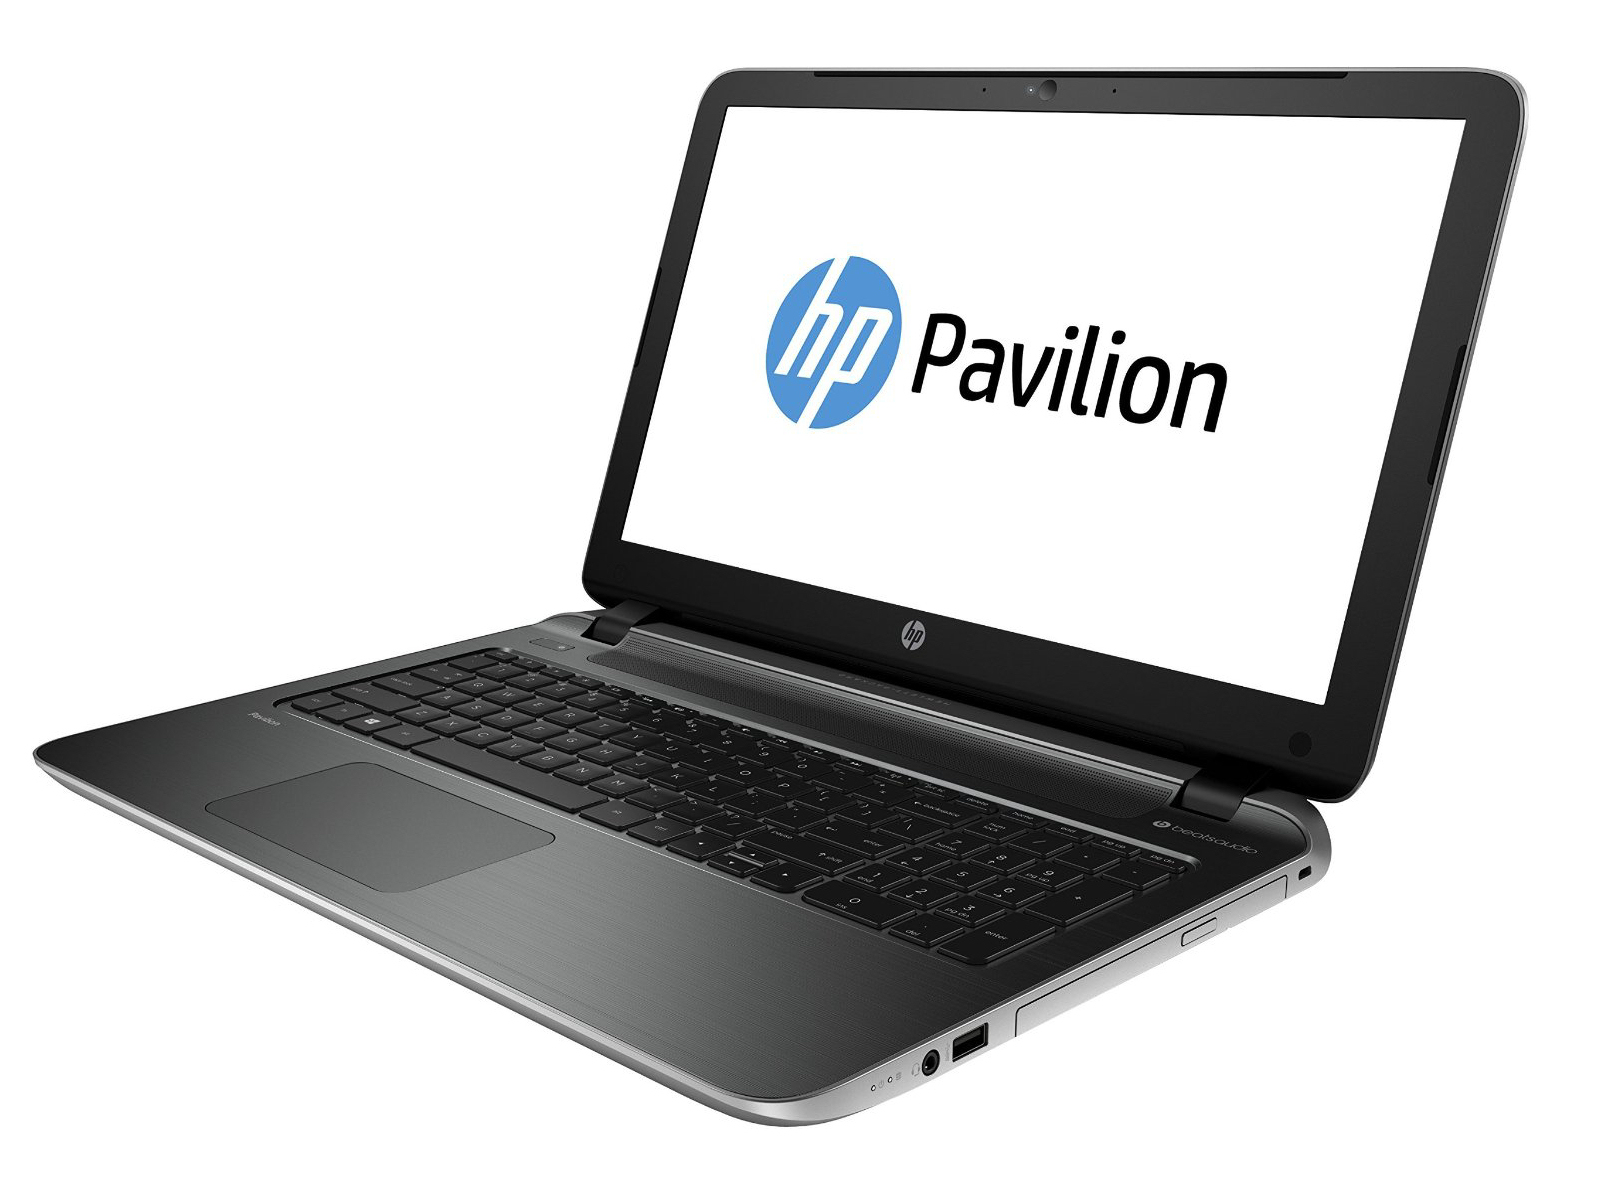 HP Pavilion 15-p135ng AMD A10, 8GB, 500GB, 15.6“